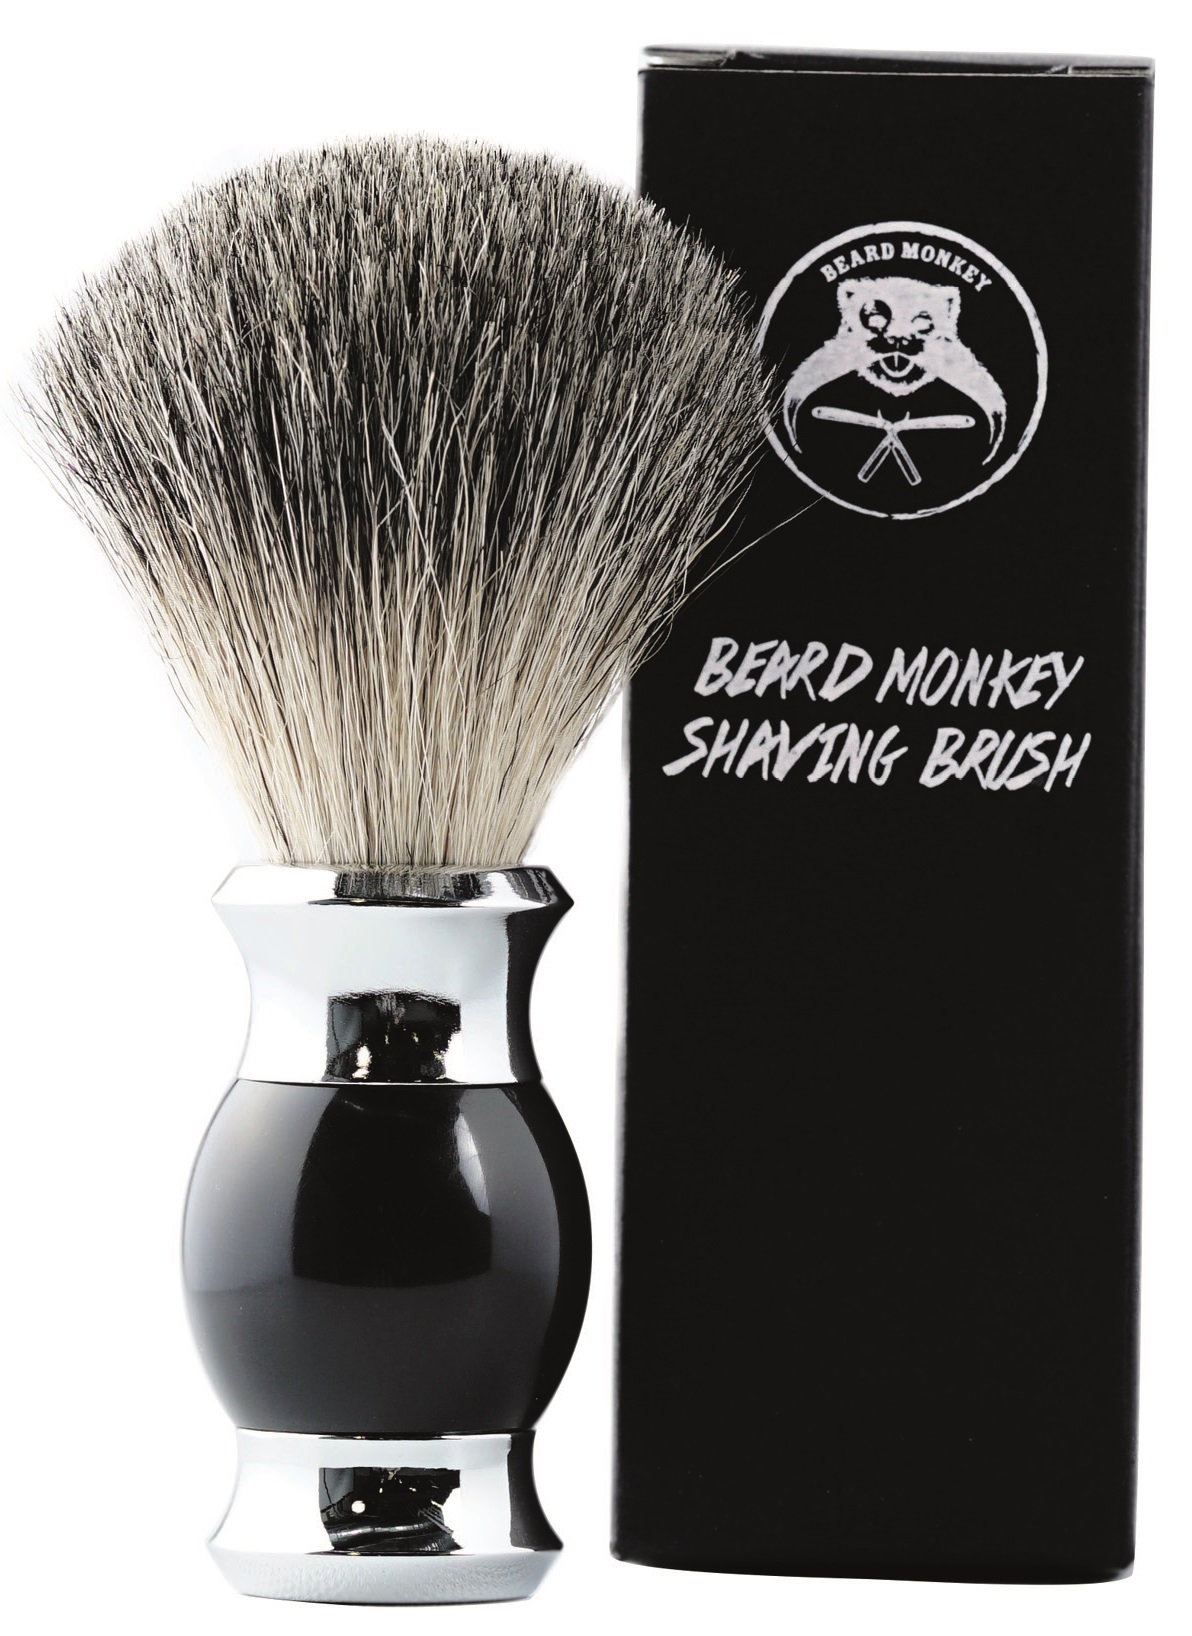 Beard Monkey Shaving Brush